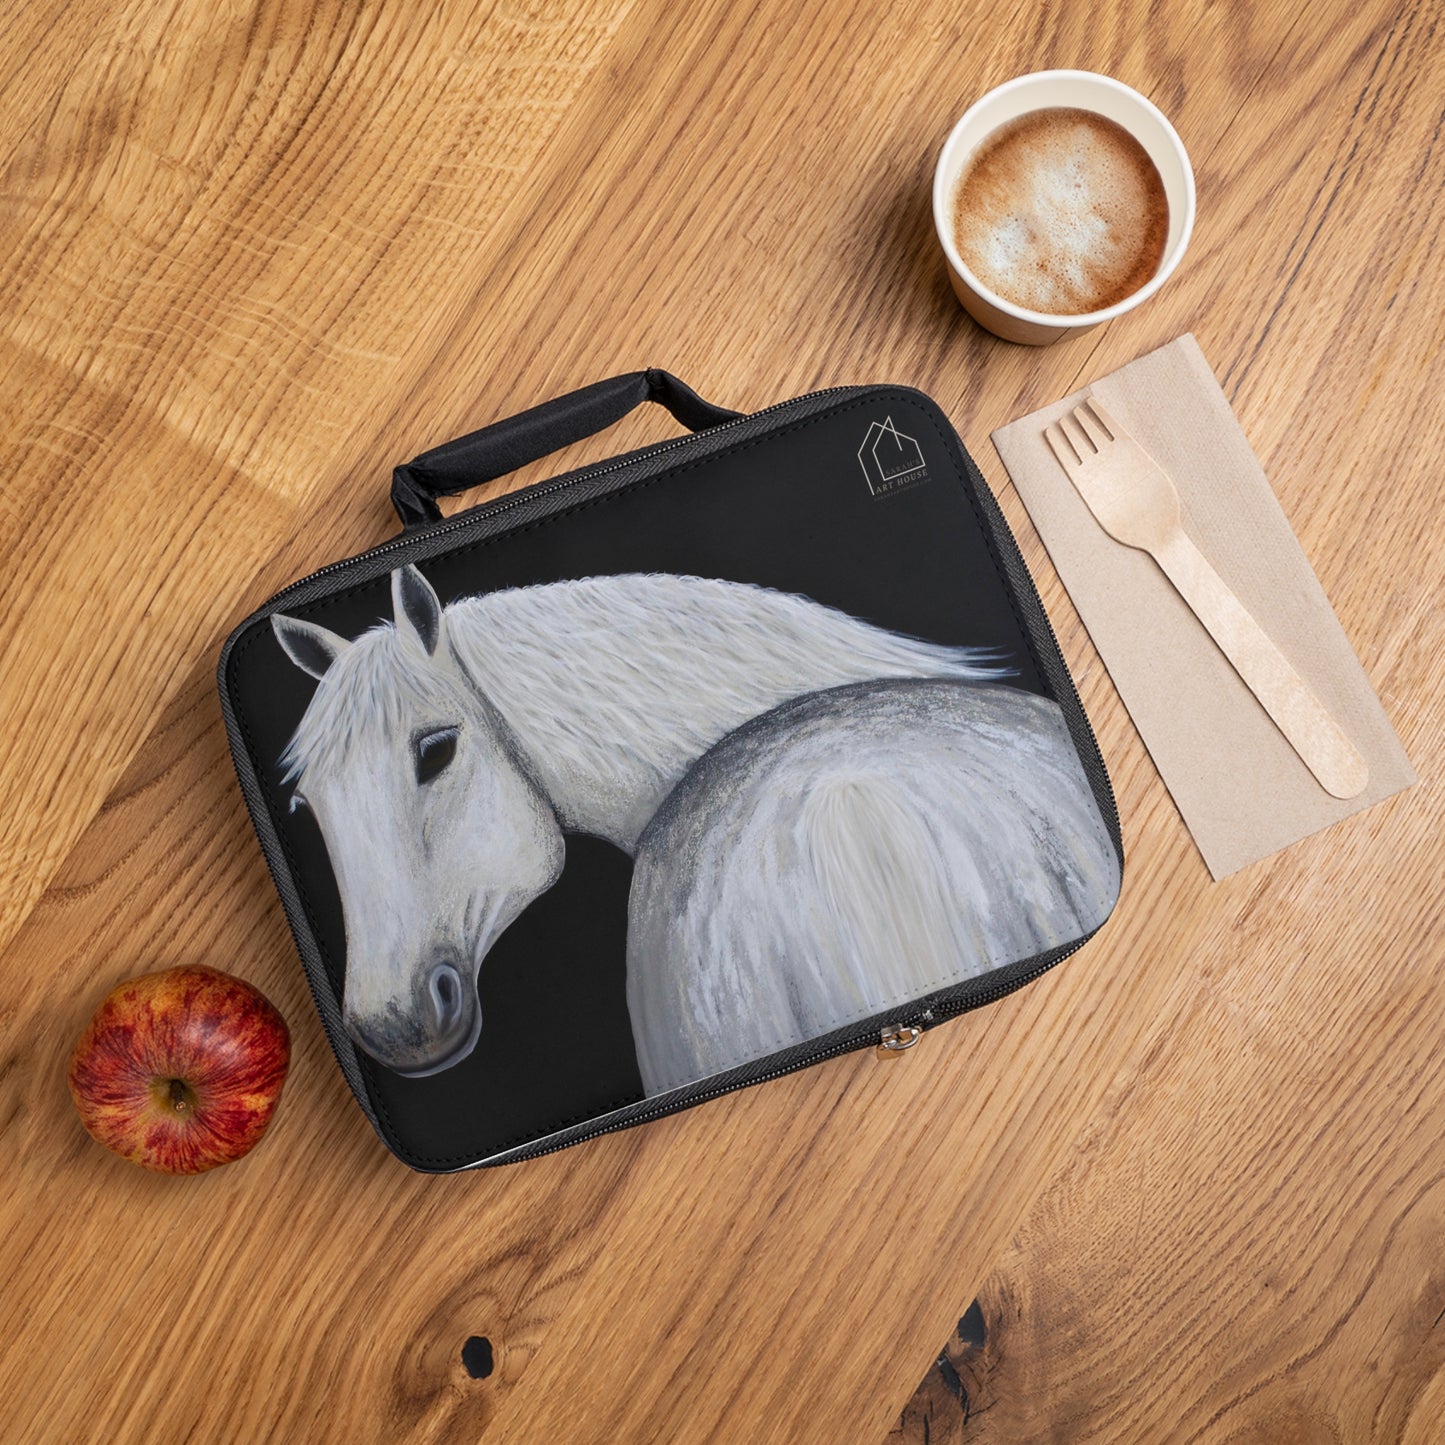 Lunch Bag - Equestrian Lunch box - Horse sandwich bag - Ghost Food storage